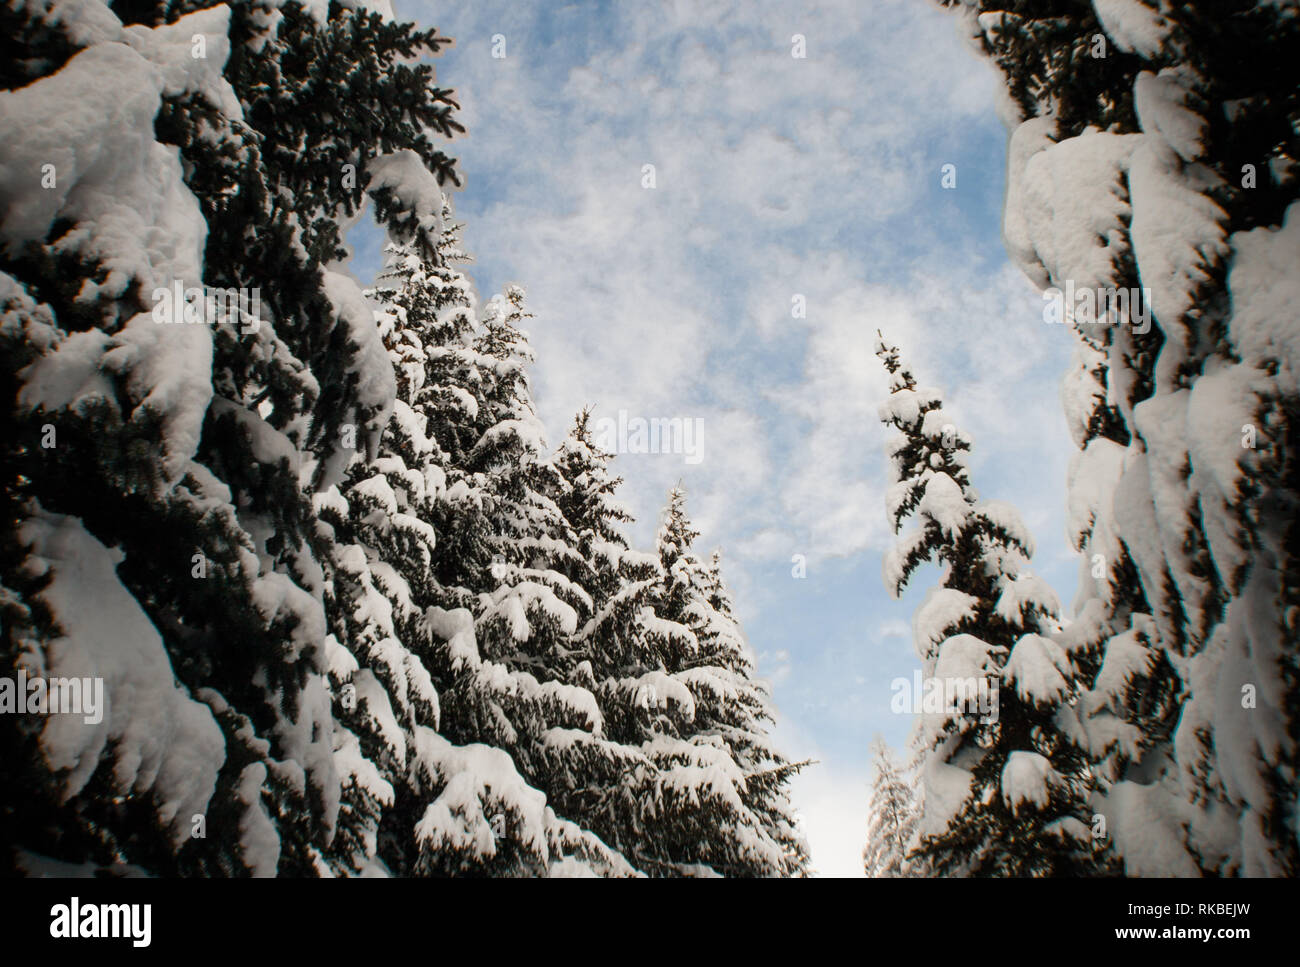 Ampia, fishe eye distorto, cercando fino al blu soffici nuvole cielo da maestose coperte di neve foresta. Grandi e imponenti abeti. Foto Stock